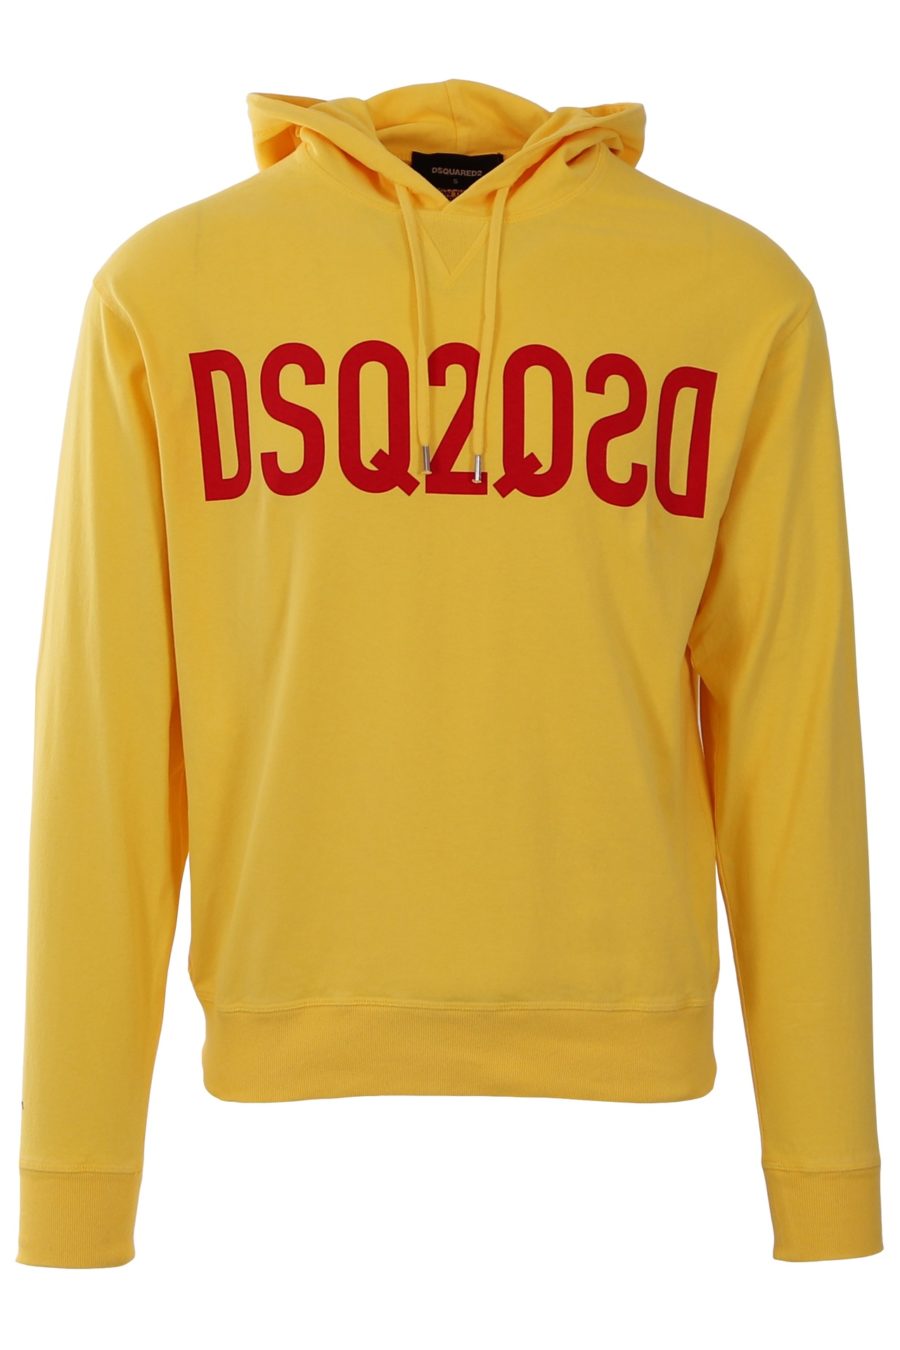 Sudadera Dsquared2 amarilla con logo rojo - 87bd5cd5a295d252f6e13df8924255d23433991e